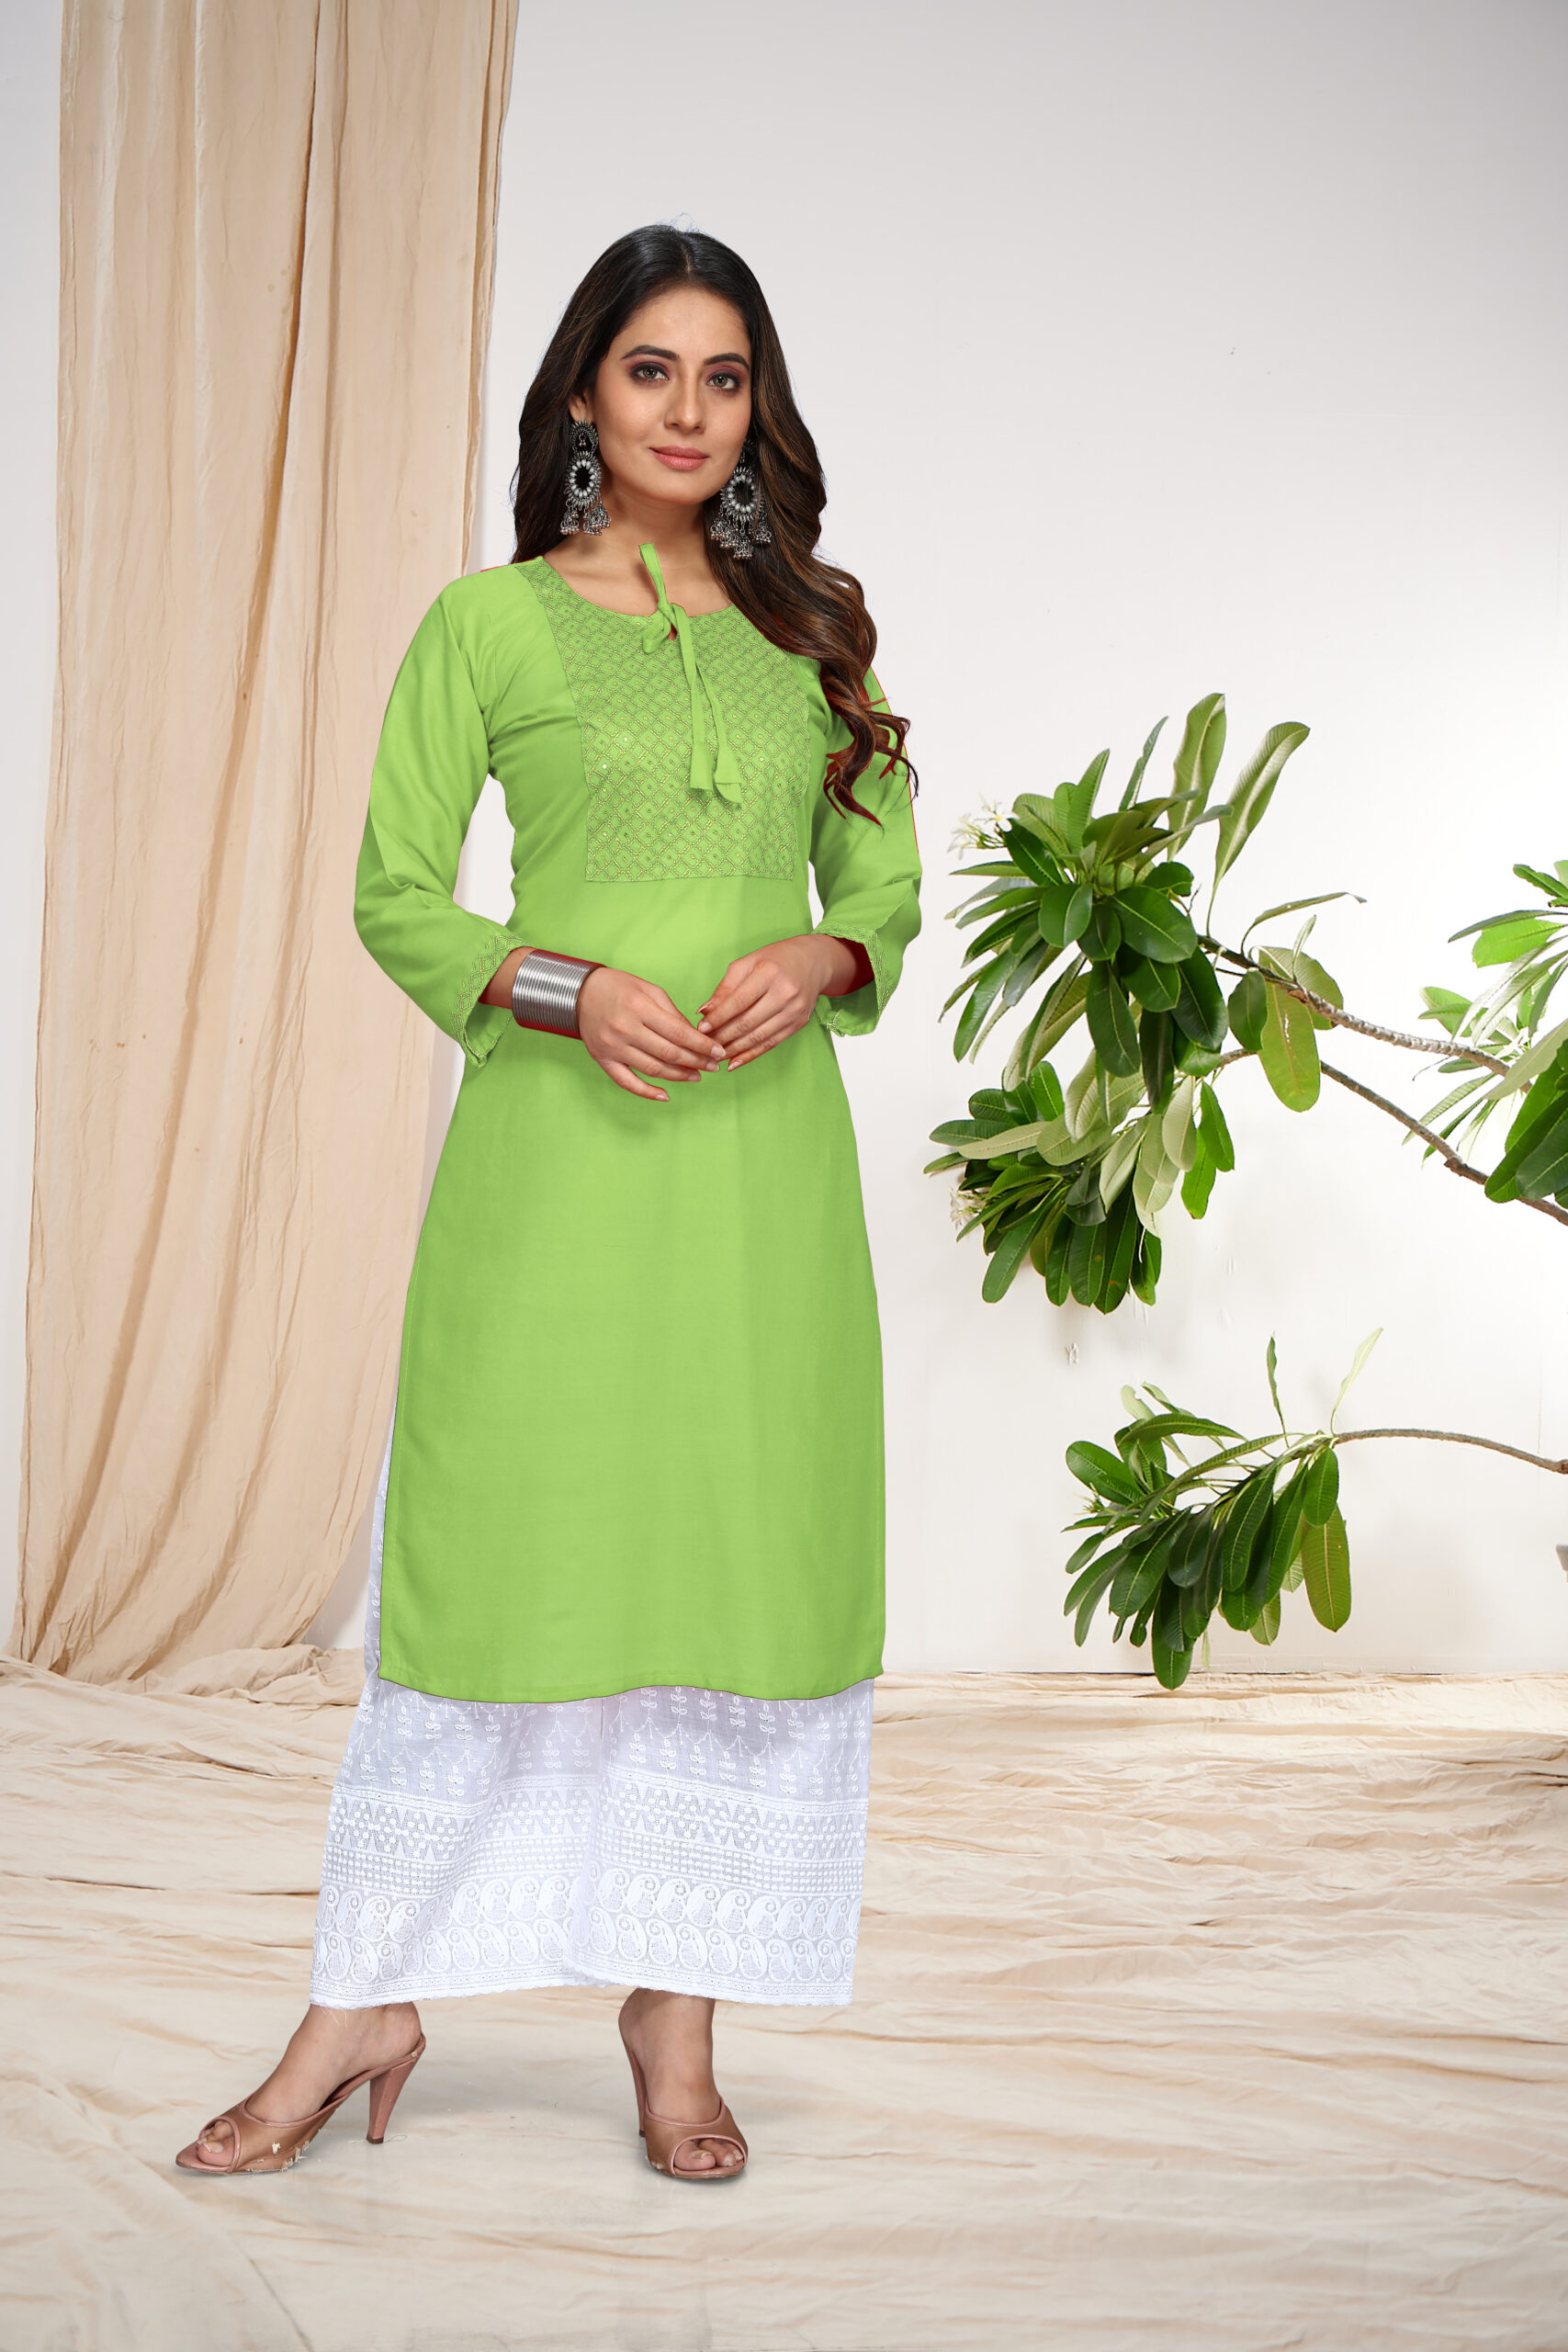 Buy Riya Women Stitched Cotton Kurti Green | Kurtis for Women | Cotton  Kurtis | Stylish Kurtis | Women Fashion Kurta at Amazon.in